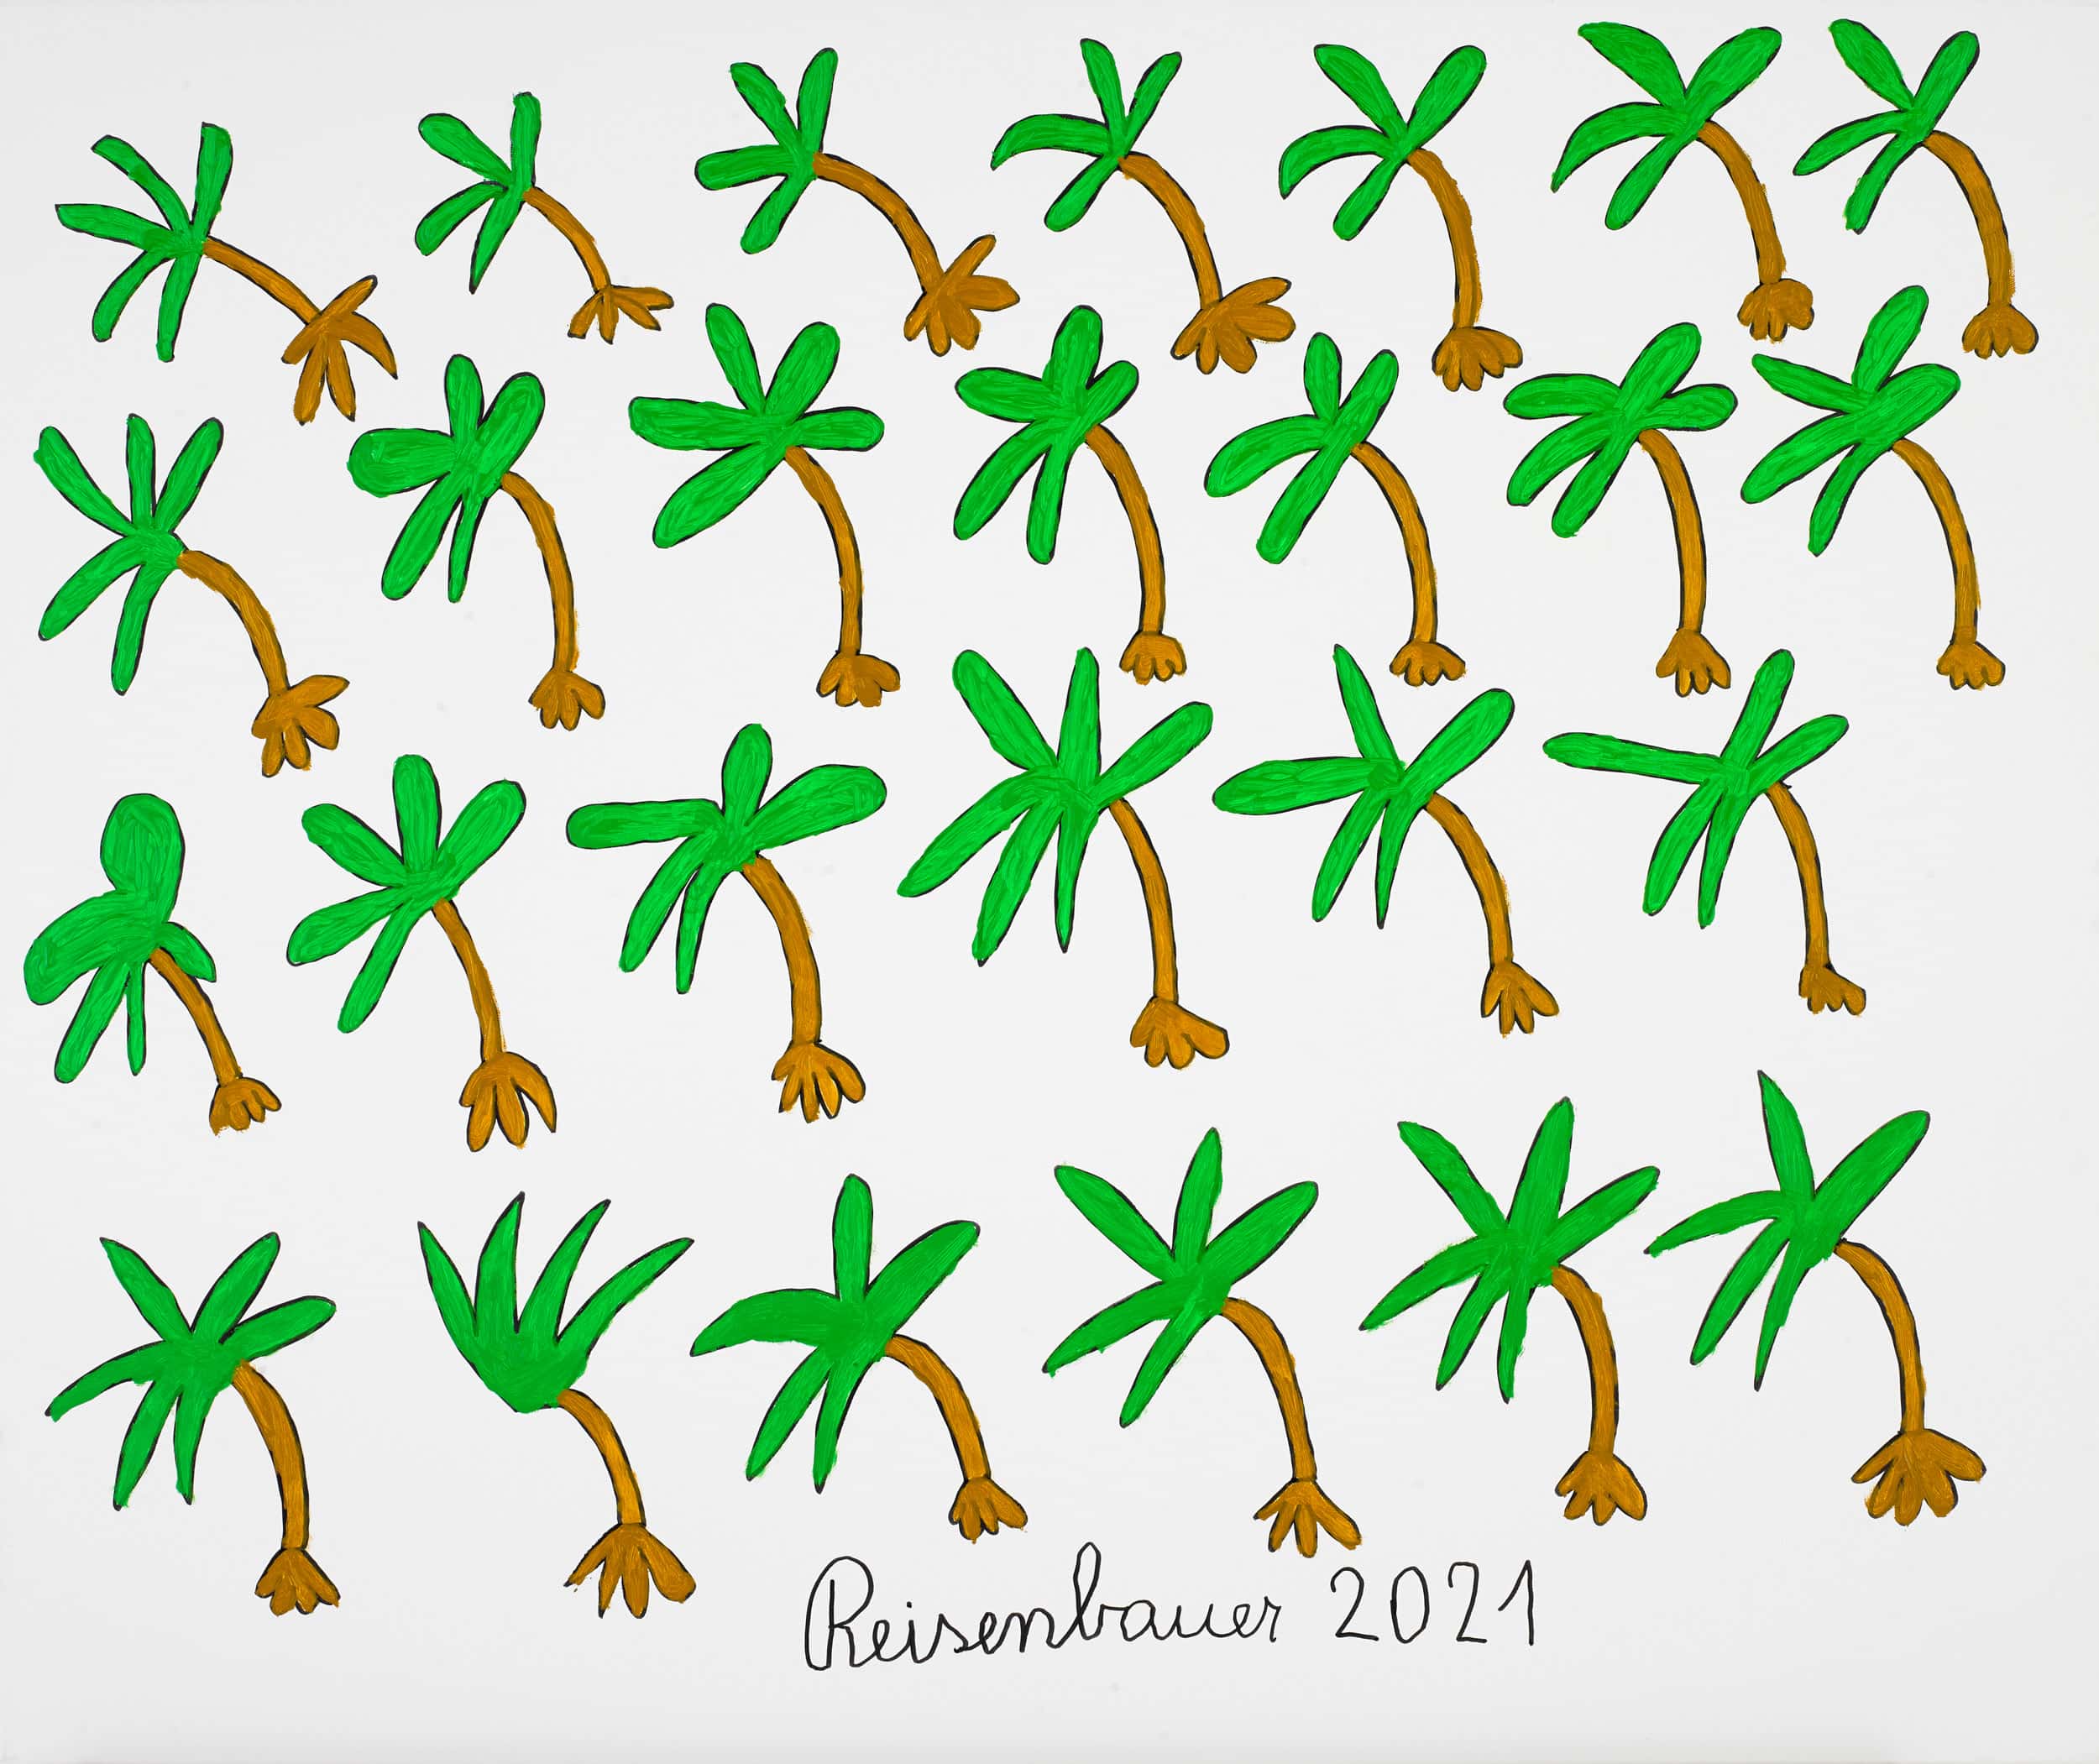 reisenbauer heinrich - Palmen / Palm trees